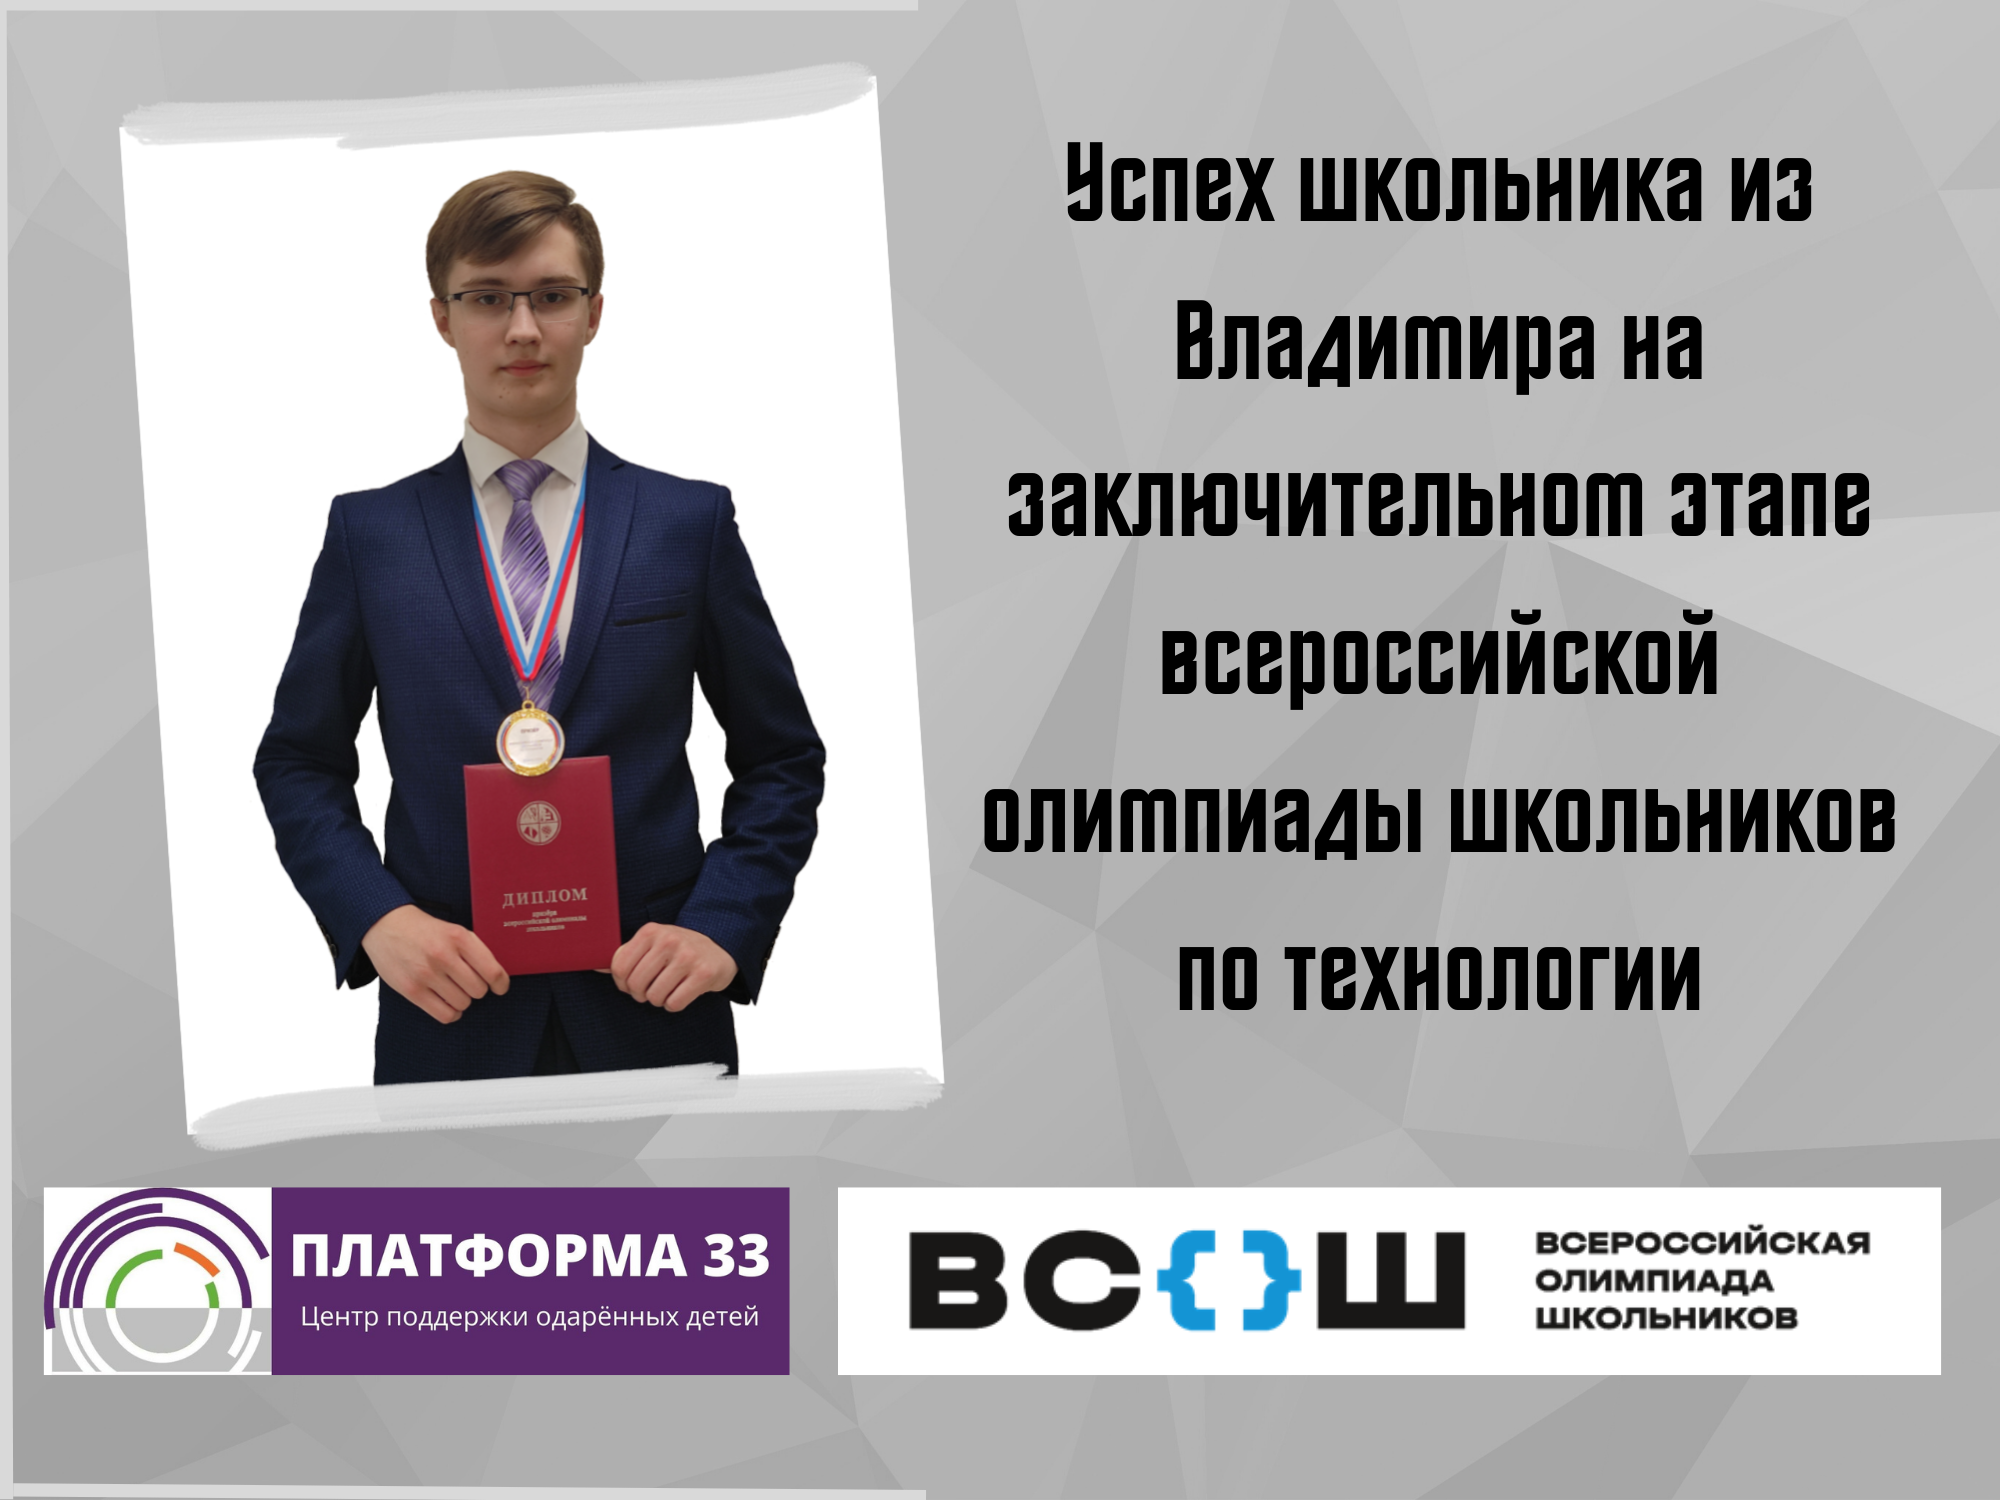 Успех школьника из Владимира на заключительном этапе всероссийской олимпиады школьников по технологии